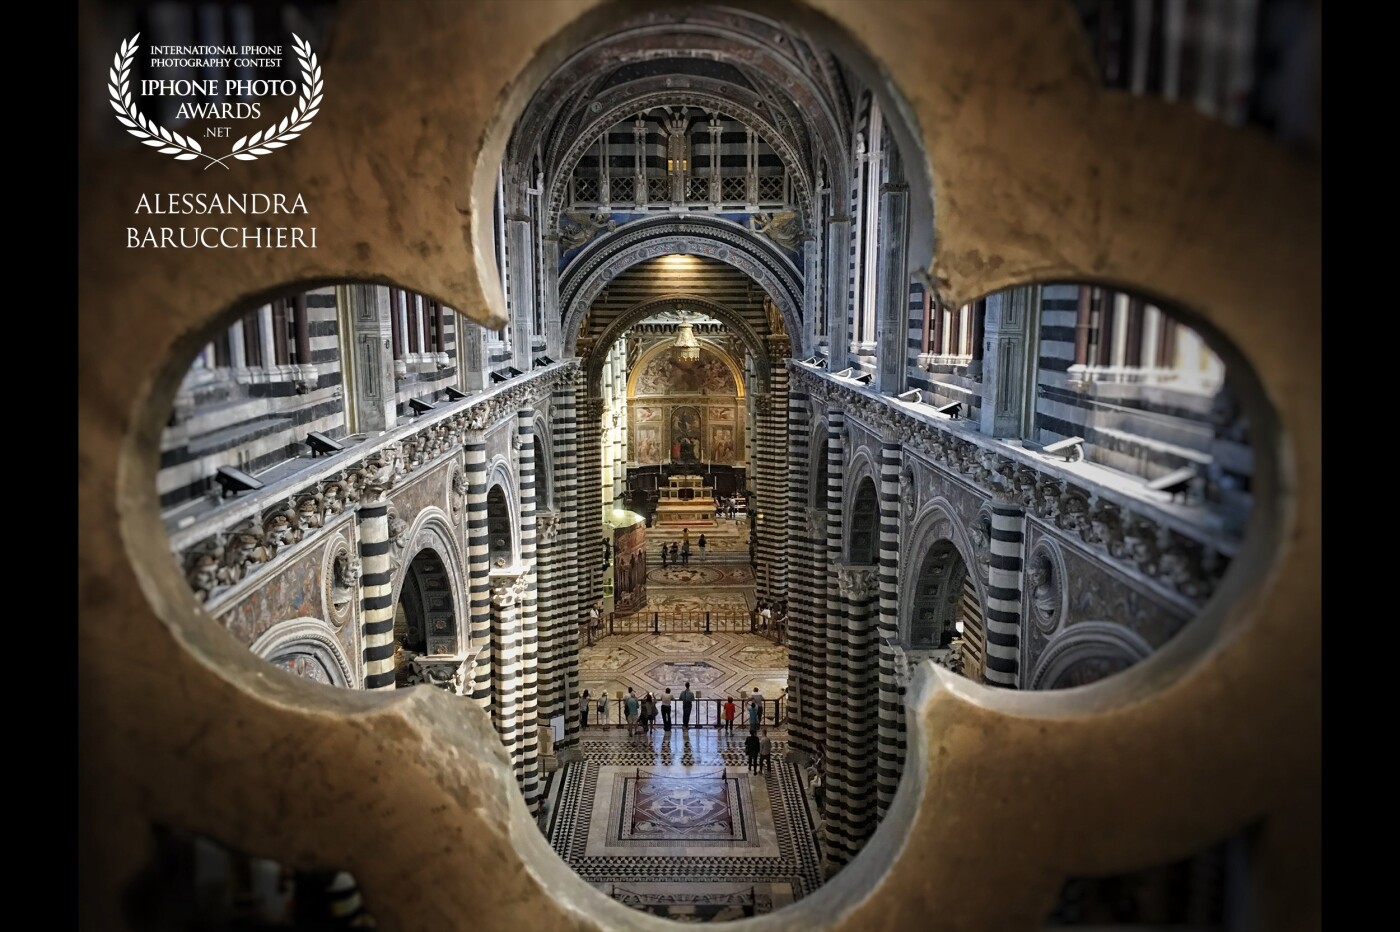 Siena, Italy<br />
The interior of the Siena Cathedral seen through the decorations of its internal passages.<br />
L’interno del Duomo di Siena visto attraverso le decorazioni dei suoi passaggi interni.